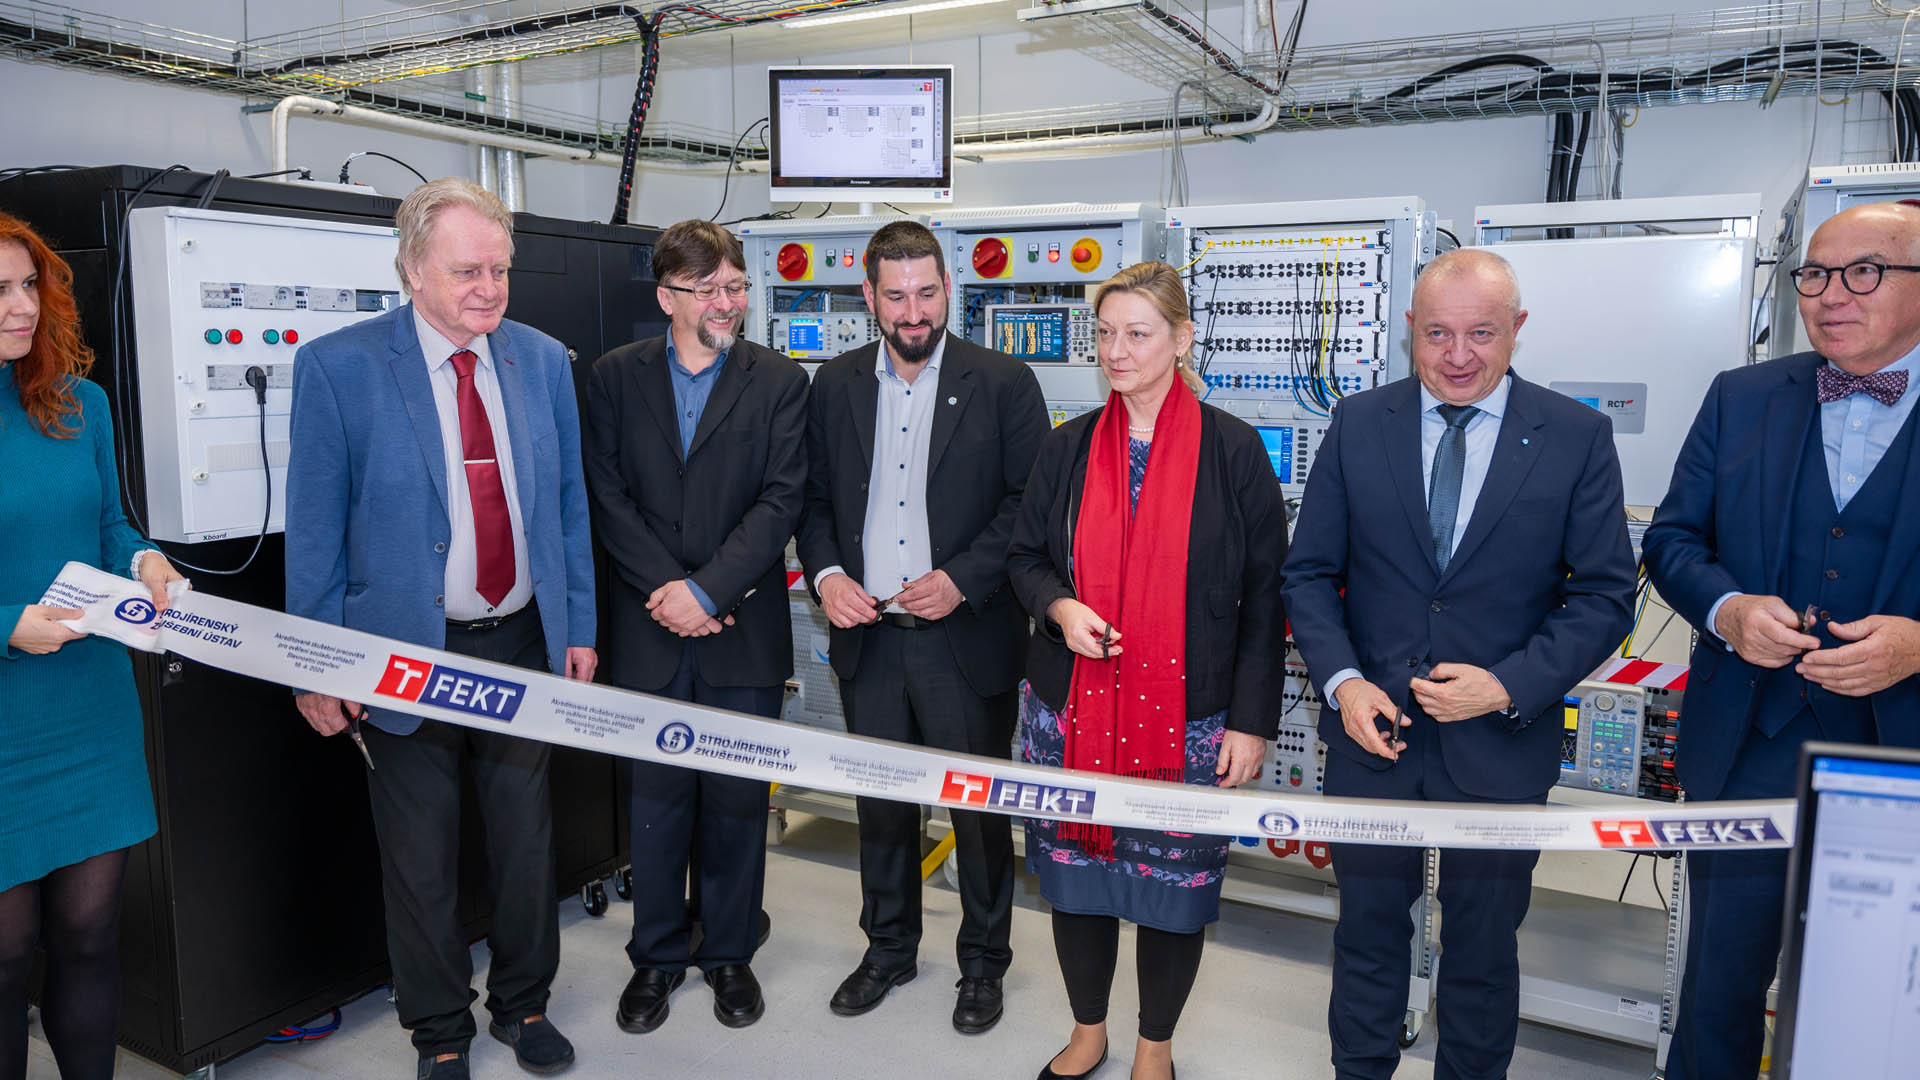 VUT představilo první českou akreditovanou zkušebnu souladu střídačů. Zvýší bezpečnost a spolehlivost elektrizační soustavy